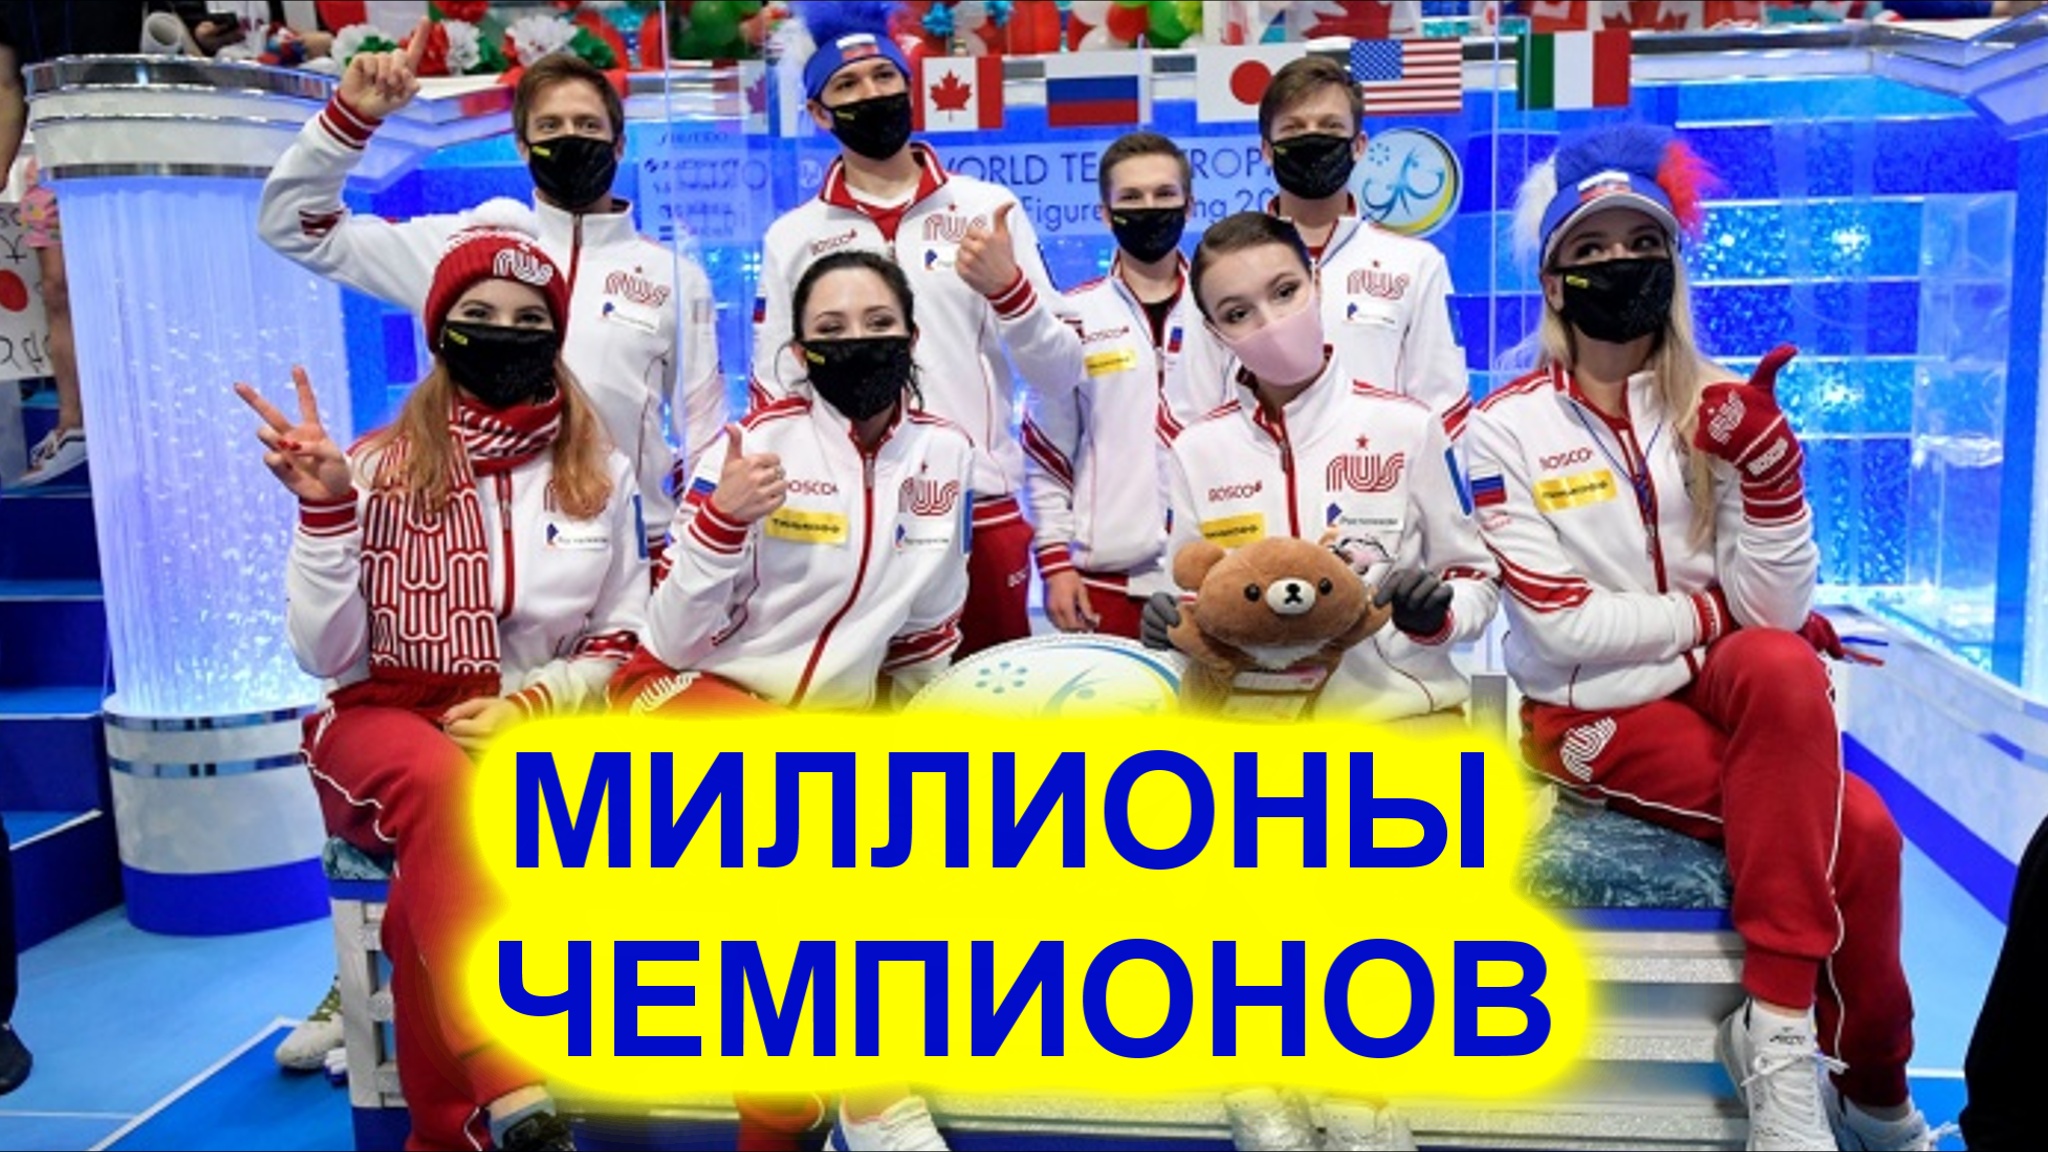 Сколько заработали российские фигуристы на командном чемпионате мира